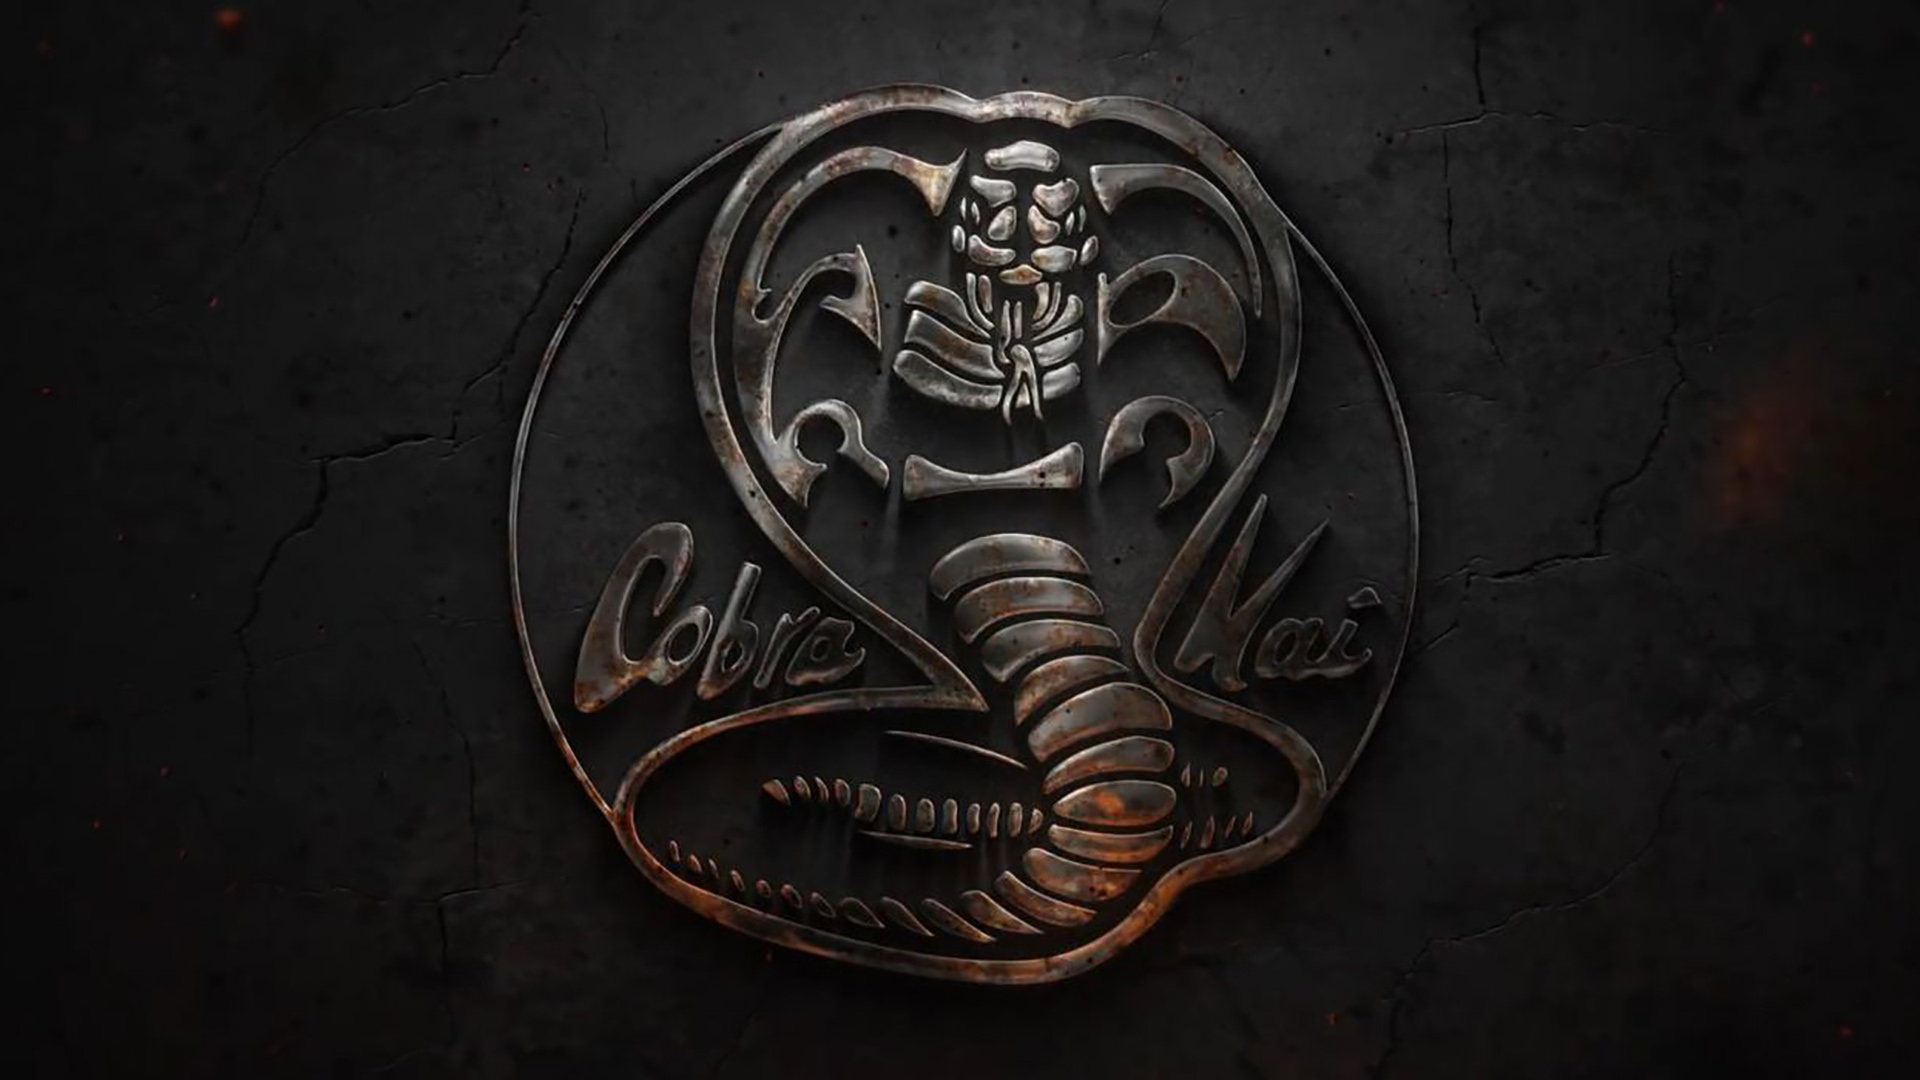 Cobra wallpaper by sludoworm  Download on ZEDGE  b2ee